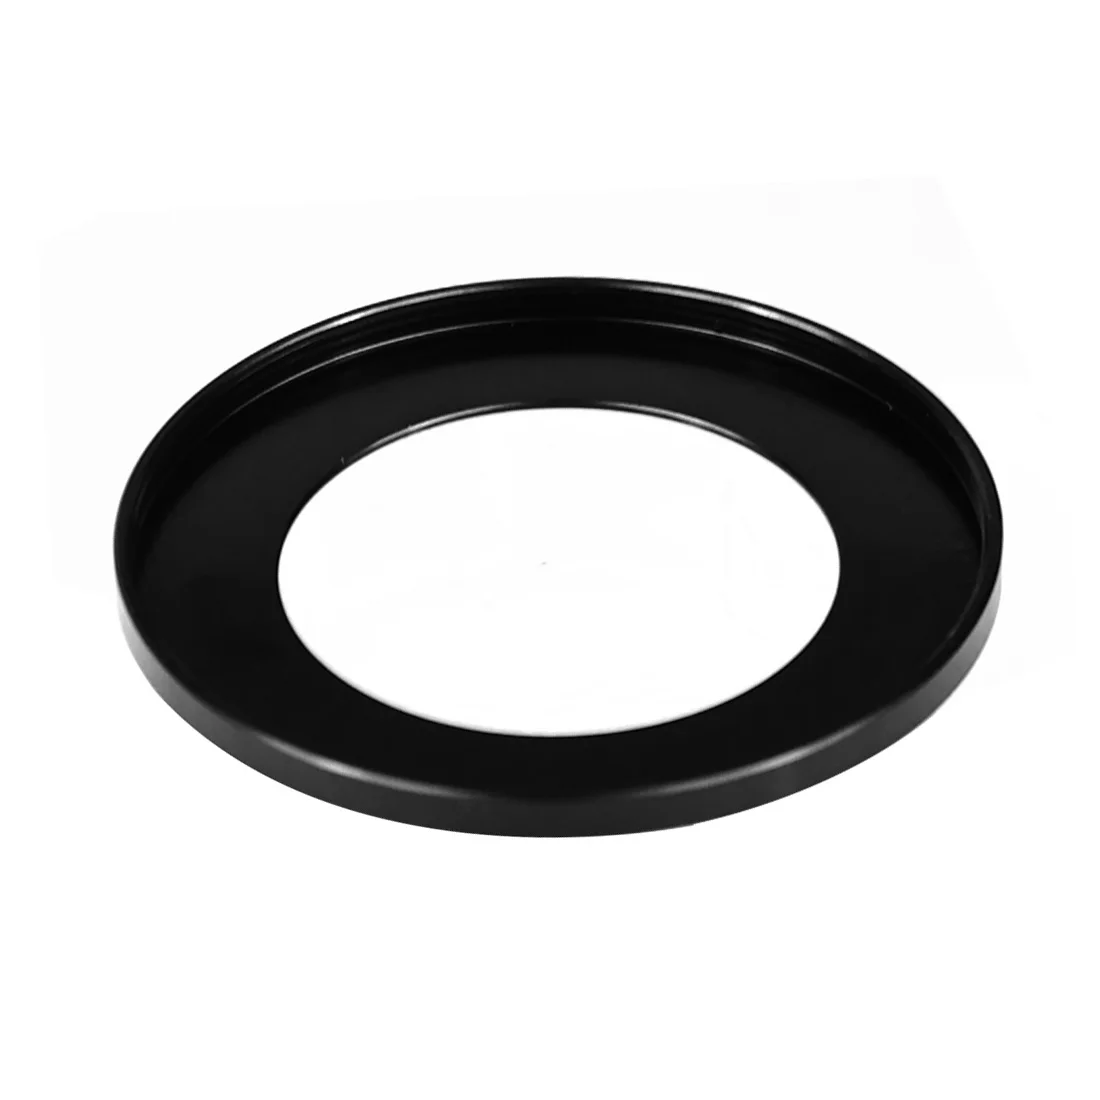 

Металлическое кольцо-адаптер BGNing 52 мм для DSLR-камеры Sony ZV1 стандартный фильтр 52 мм Широкоугольный макро-объектив CPL